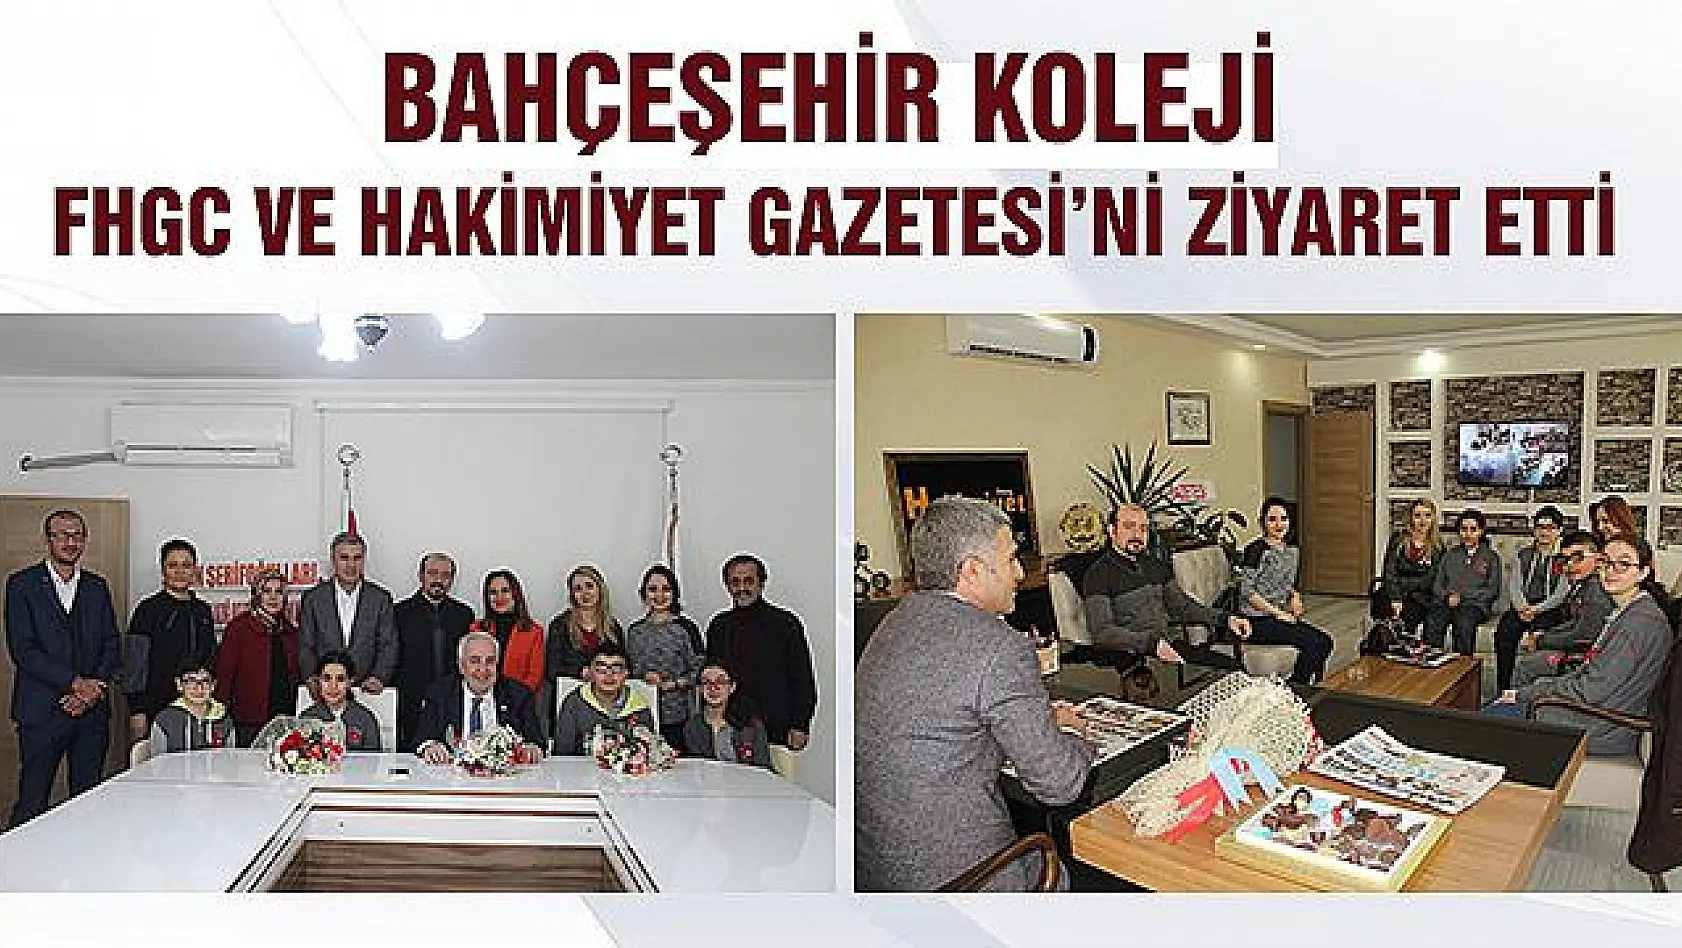 Bahçeşehir Koleji, FHGC ve Hakimiyet Gazetesi'ni Ziyaret Etti